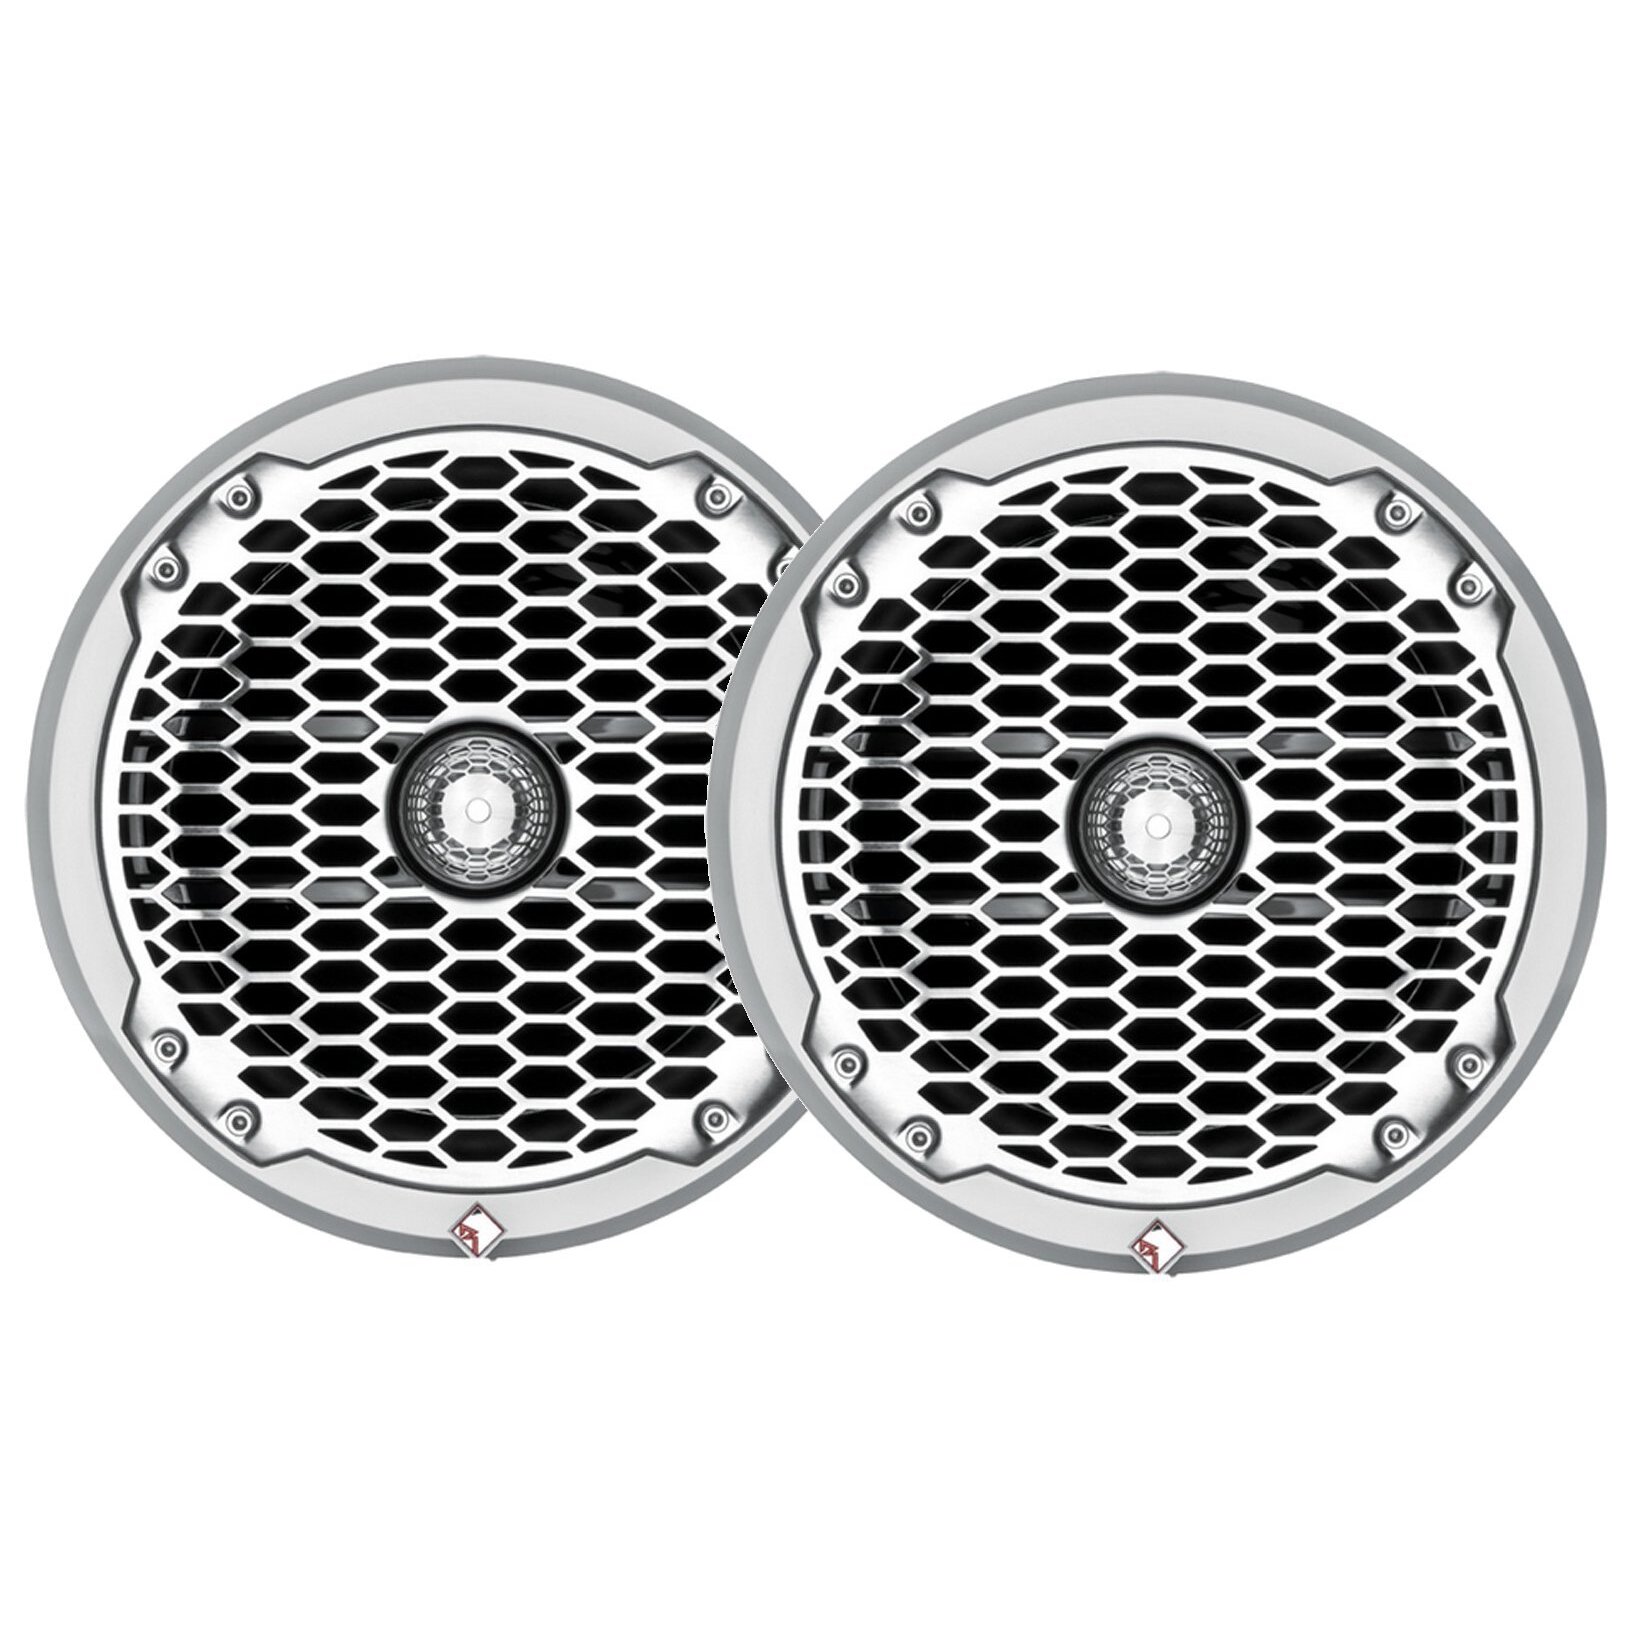 Rockford Fosgate PM262 6.5" White/Stainless Steel Coaxial/Component (Pair) 150 Watt Waterproof Marine Speakers